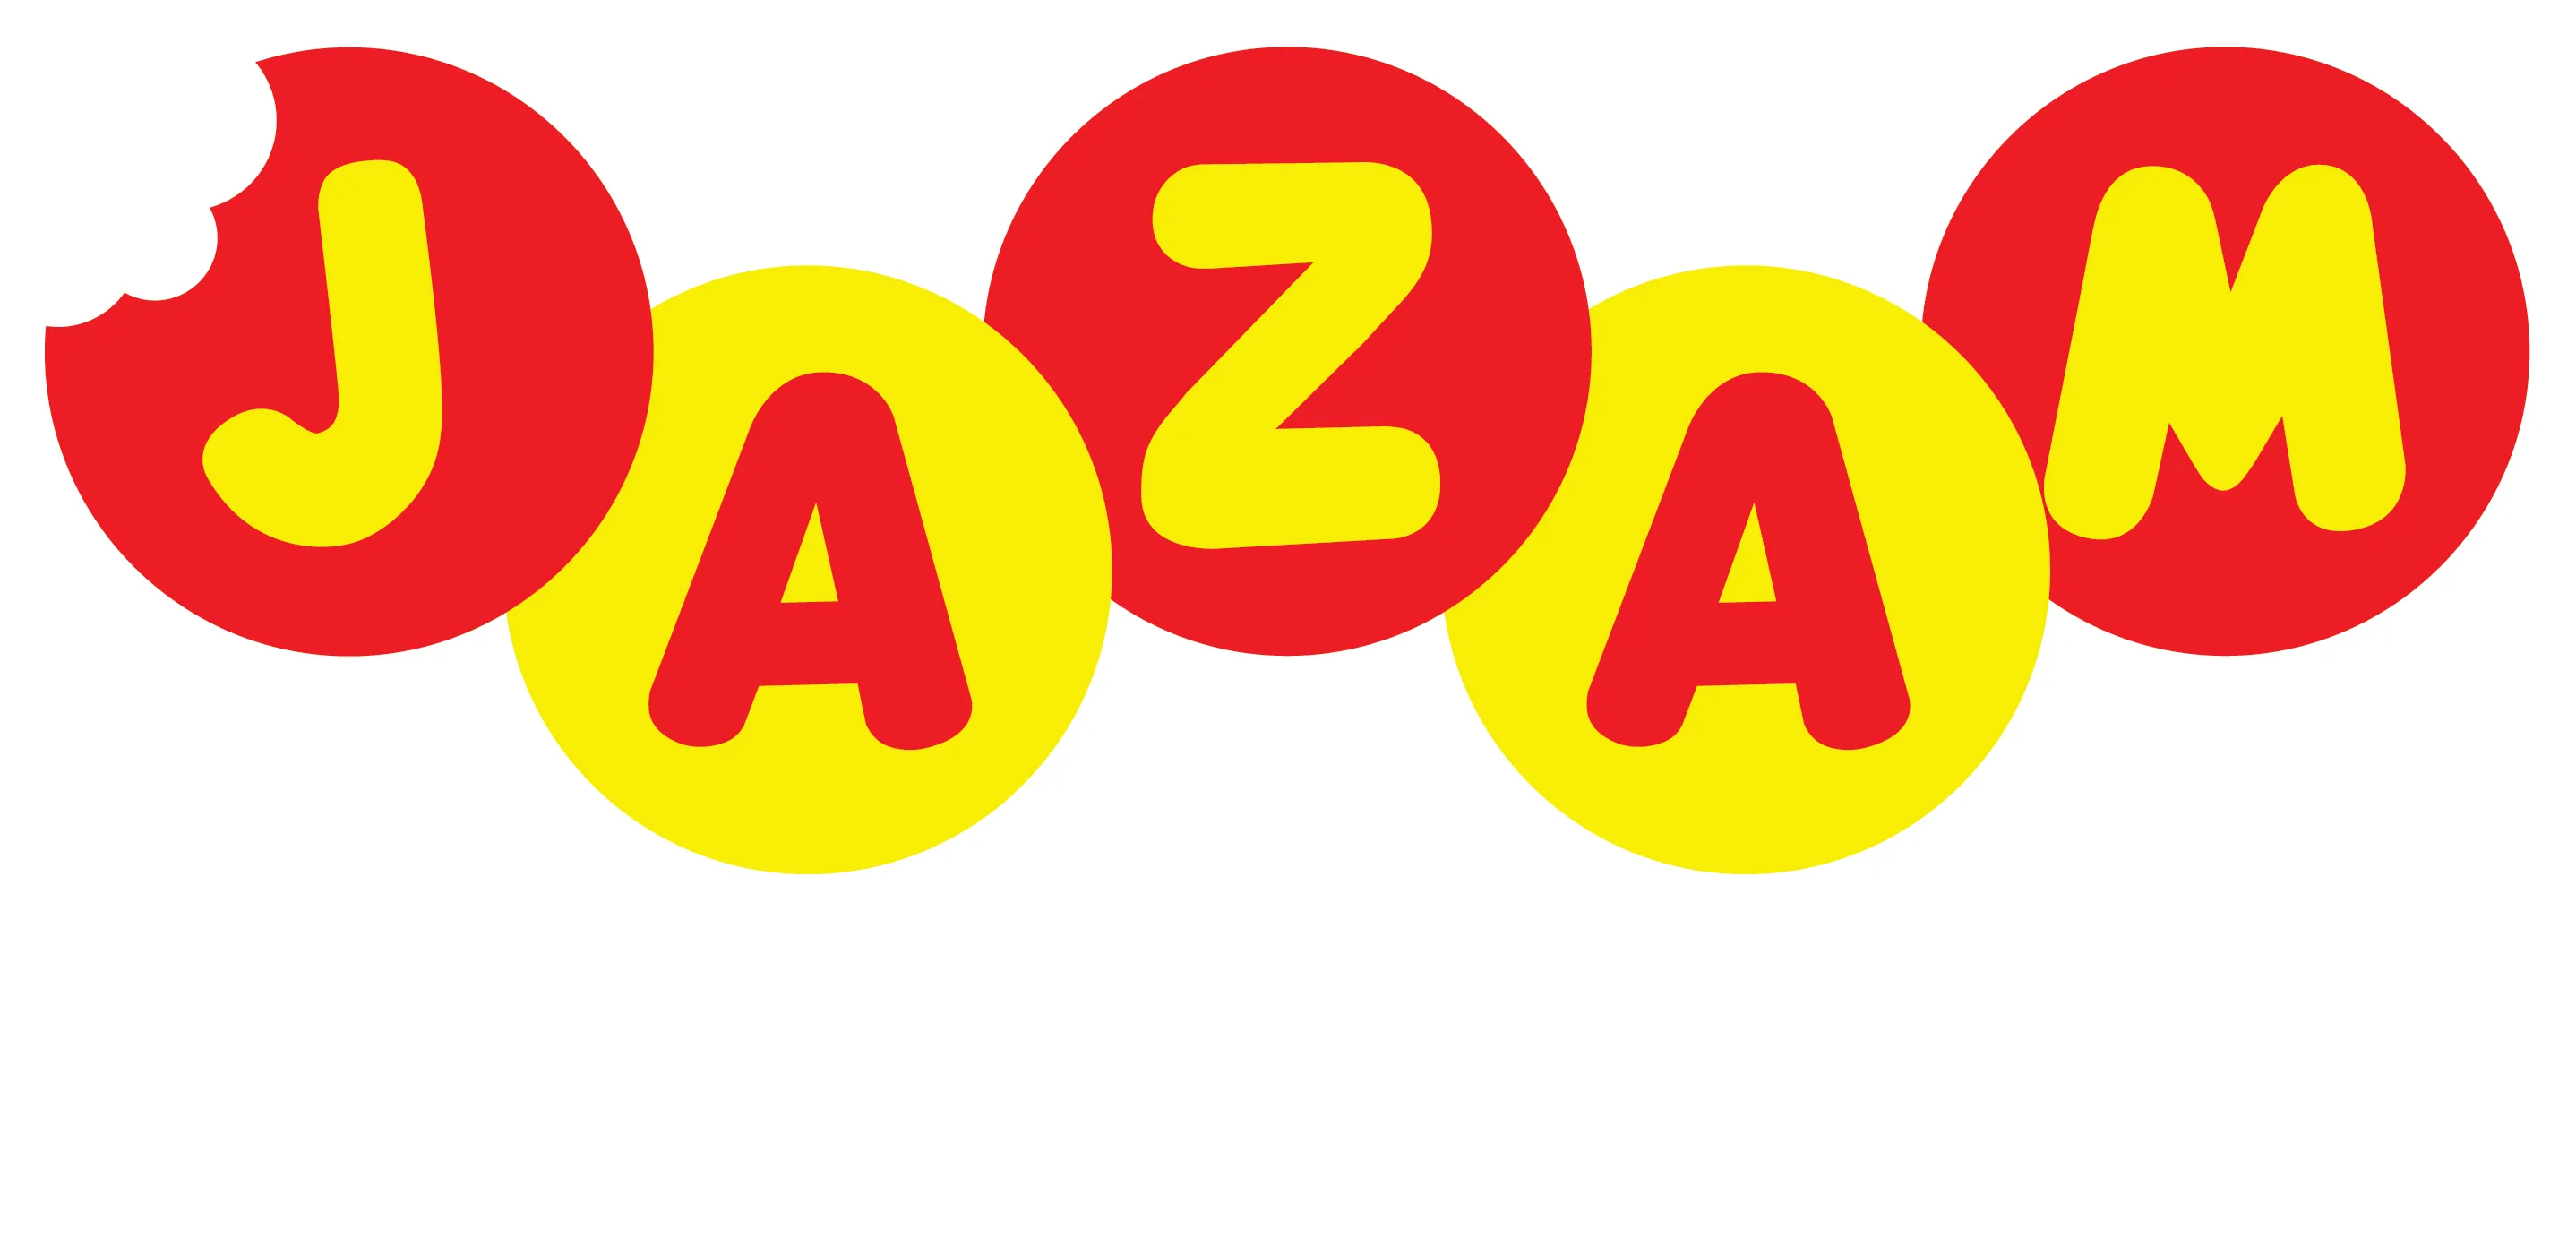 jazamloja.com.br